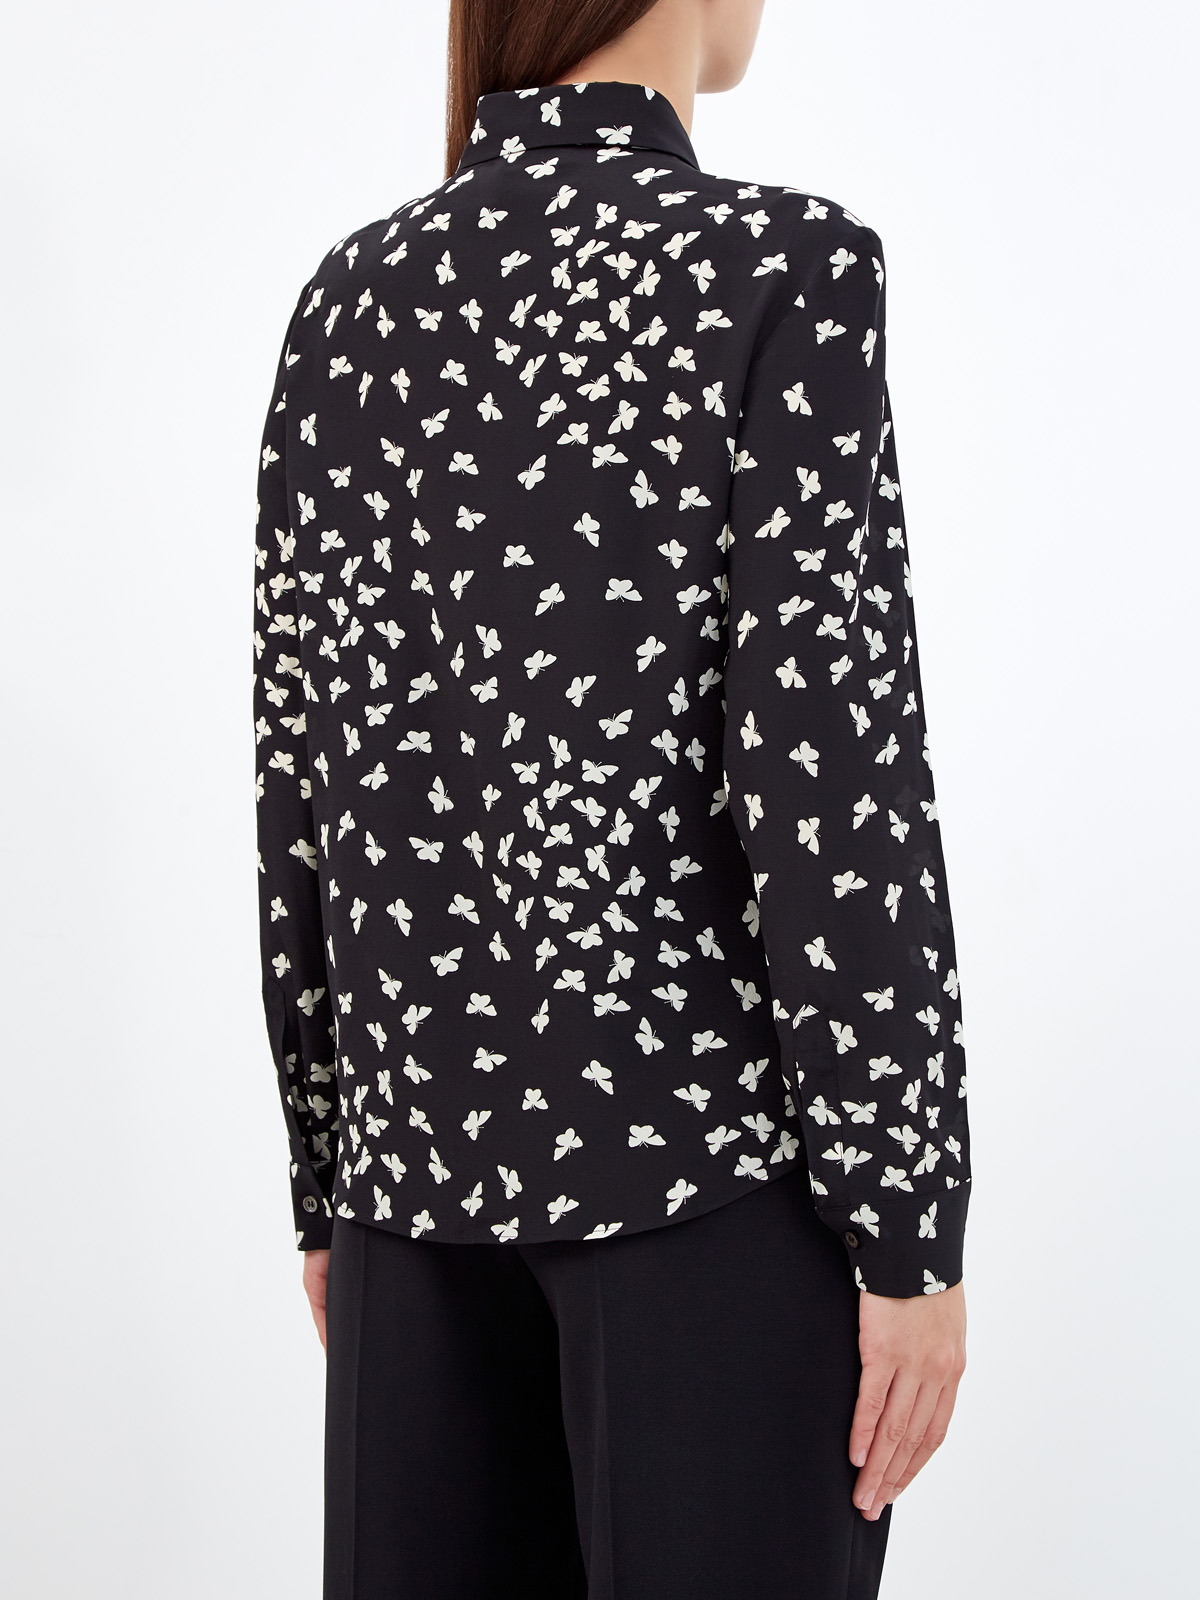 Шелковая блуза с принтом «Тысяча бабочек» REDVALENTINO, цвет мульти, размер M;XL;S - фото 4